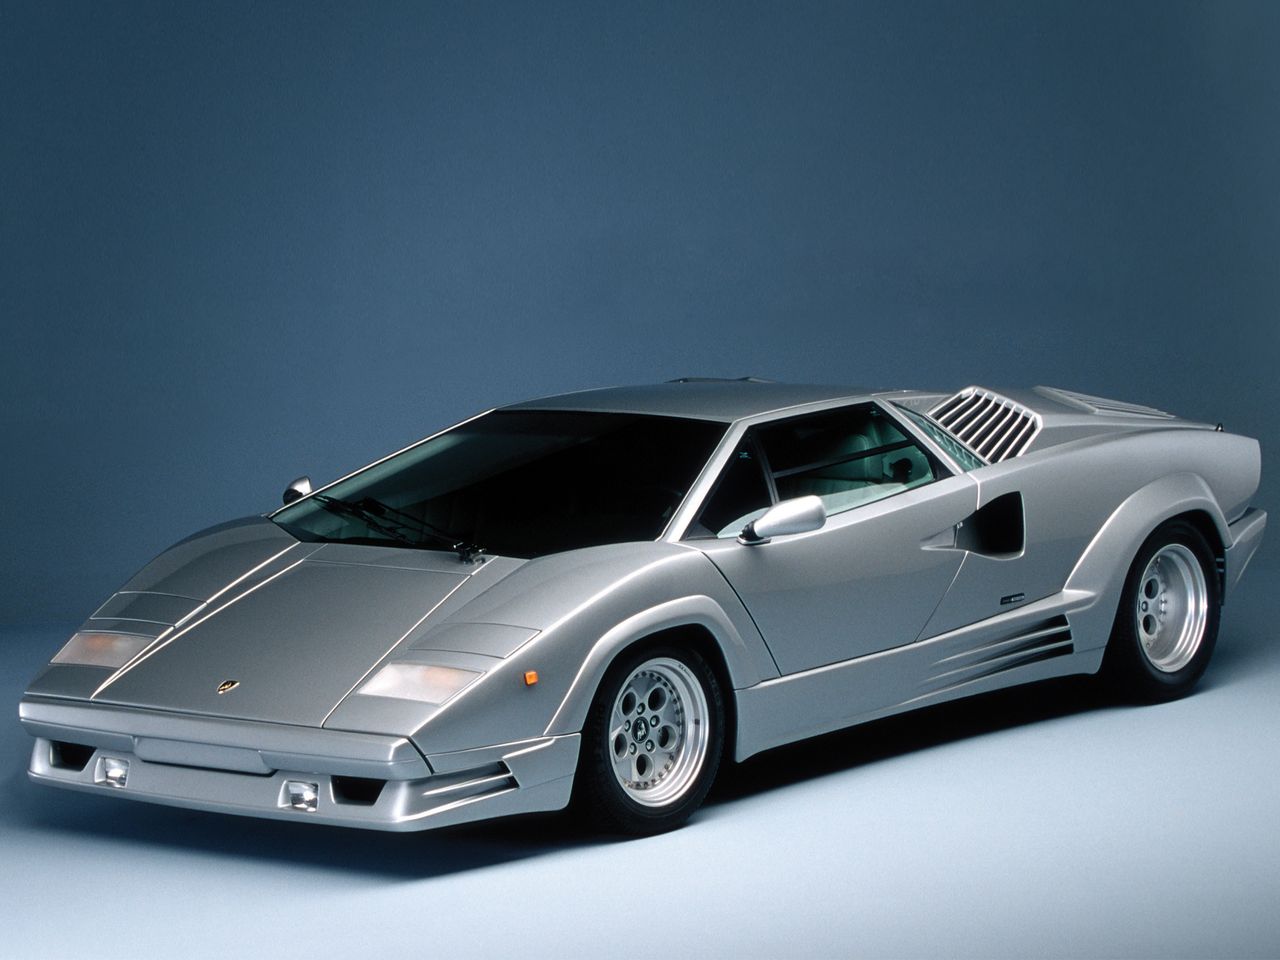 1988 Lamborghini Countach 25th Anniversary